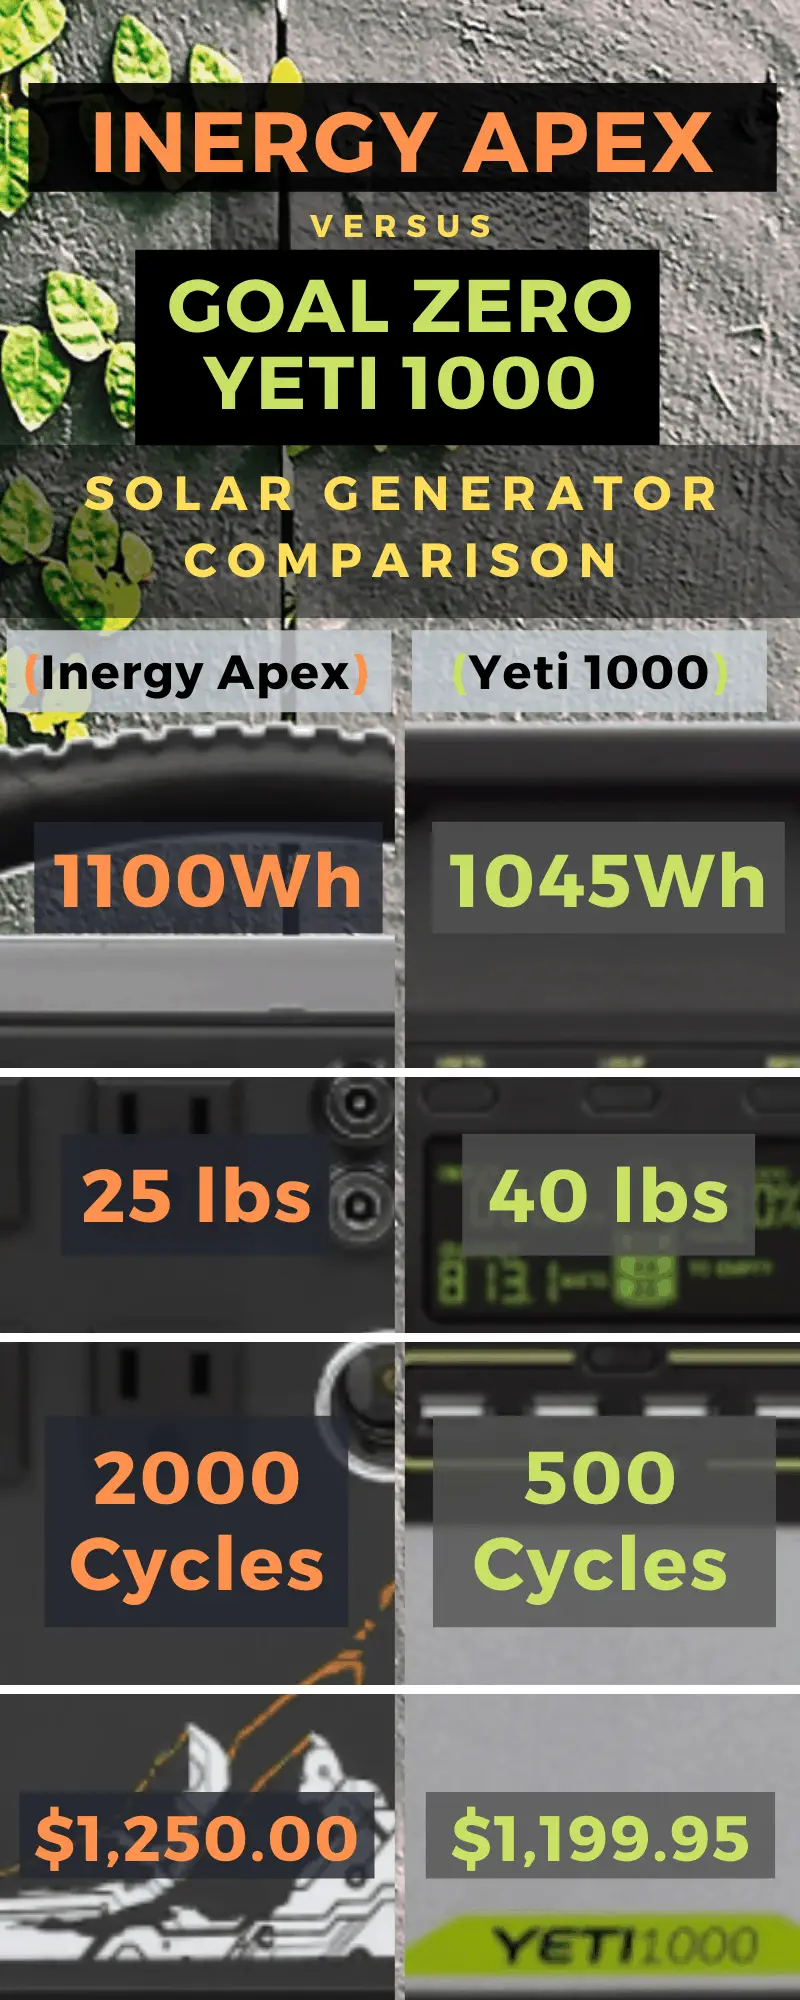 Inergy Apex vs Goal Zero Yeti 1000 comparison infographic